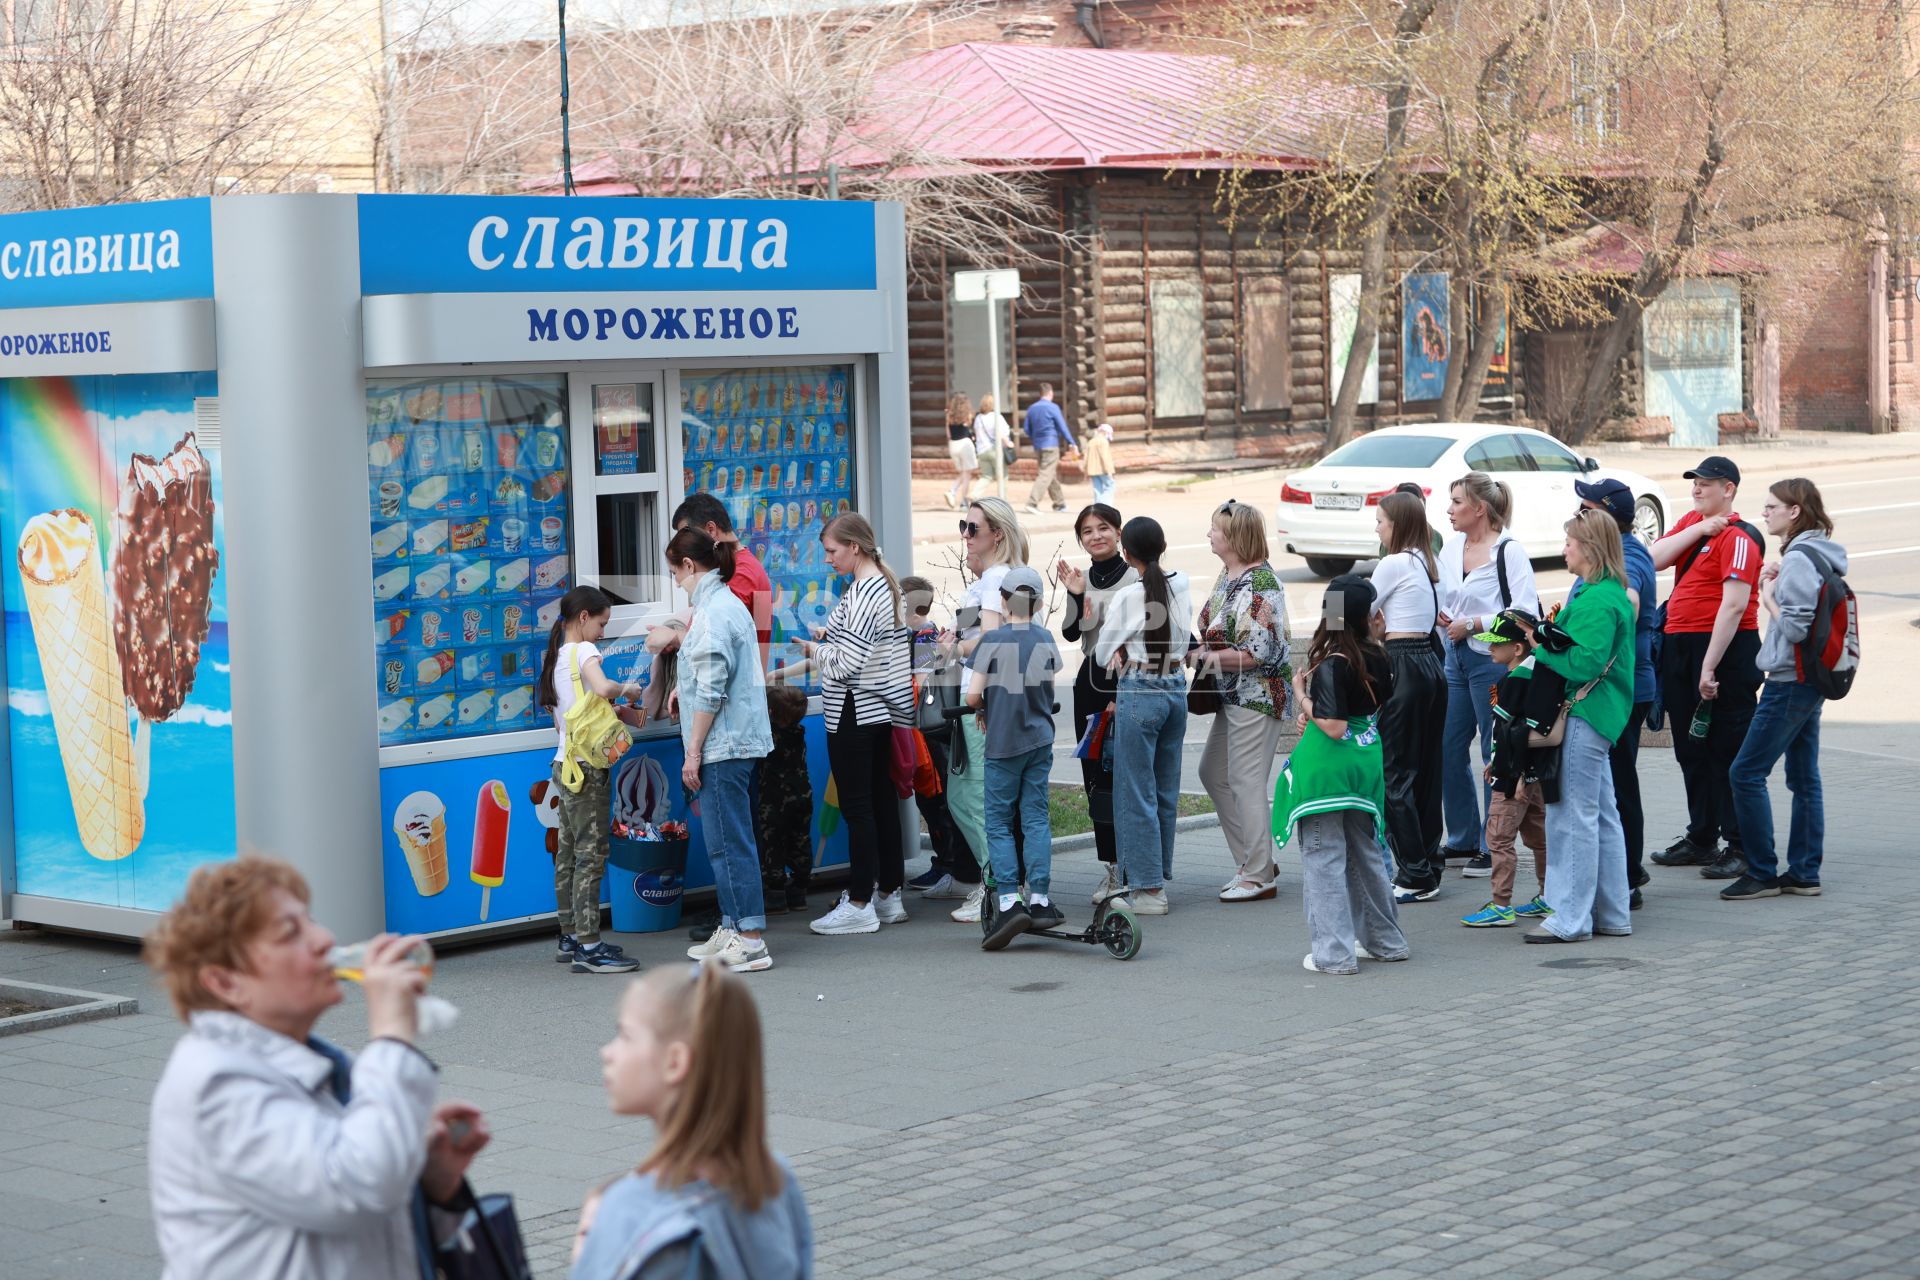 Красноярск. Местные жители стоят в очереди за мороженом во время празднования 78-й годовщины Победы в Великой Отечественной войне.